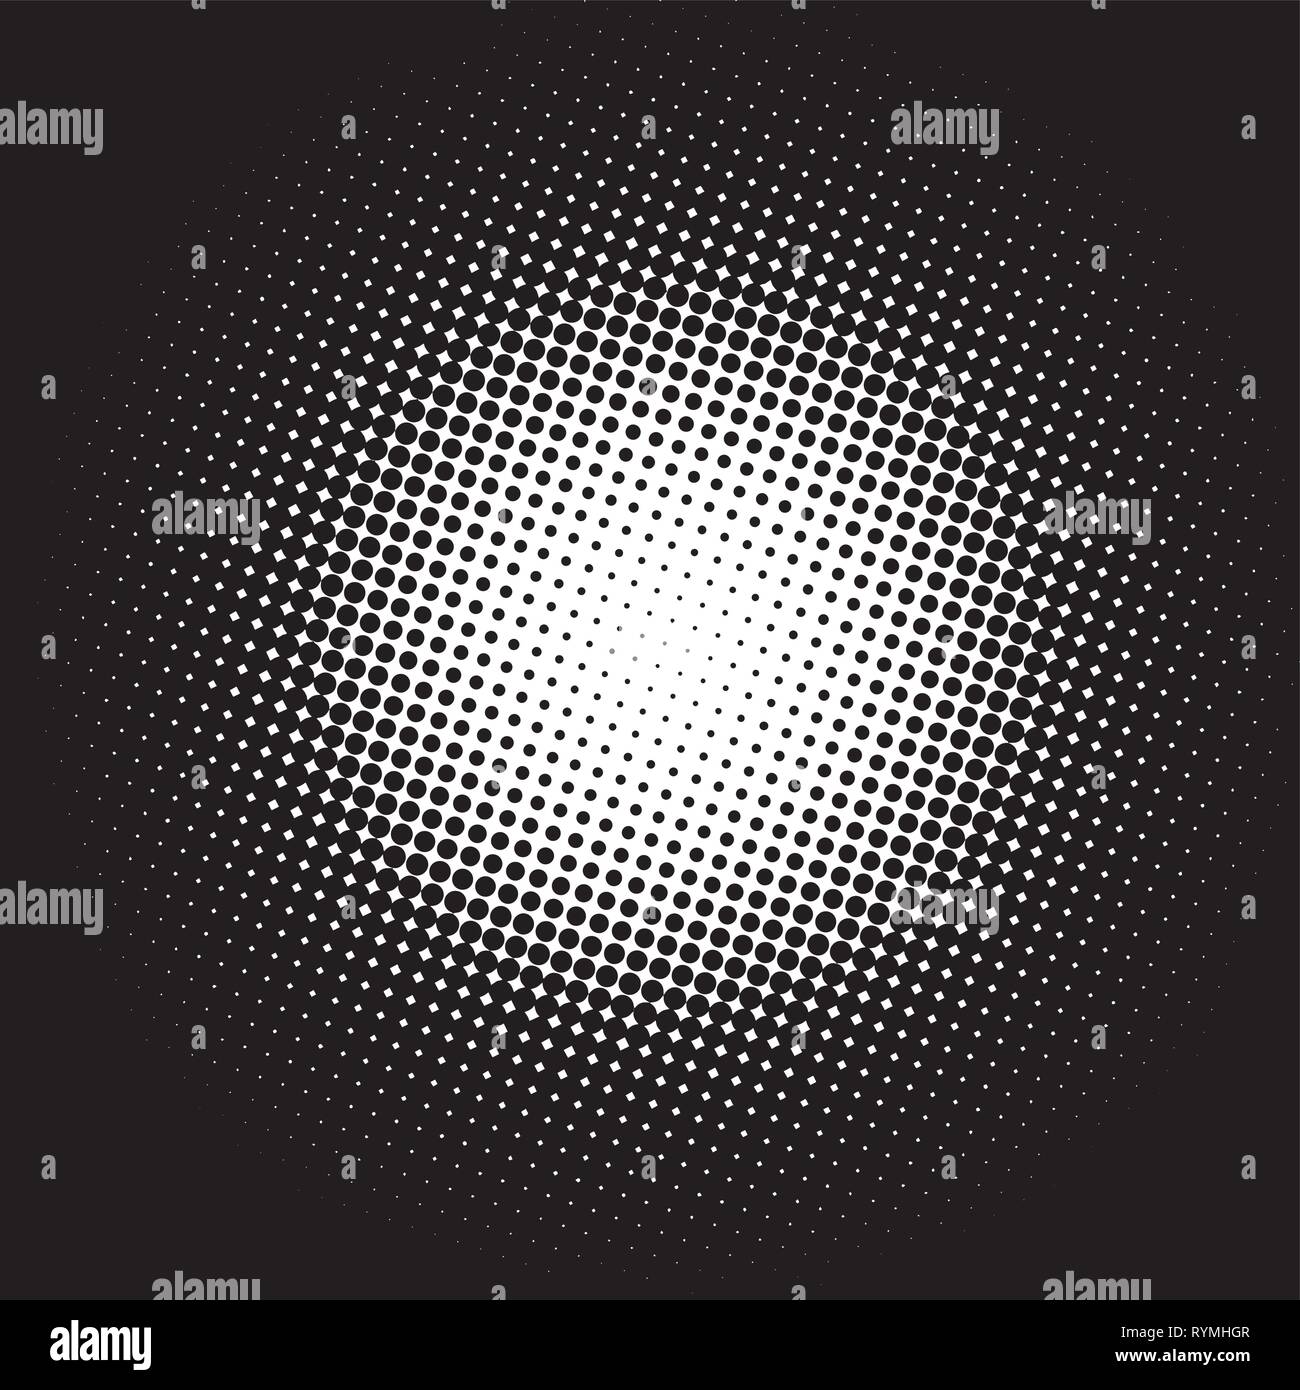 Farbe halftone Farbverlauf Kreis weiß auf schwarzem Hintergrund Stock Vektor